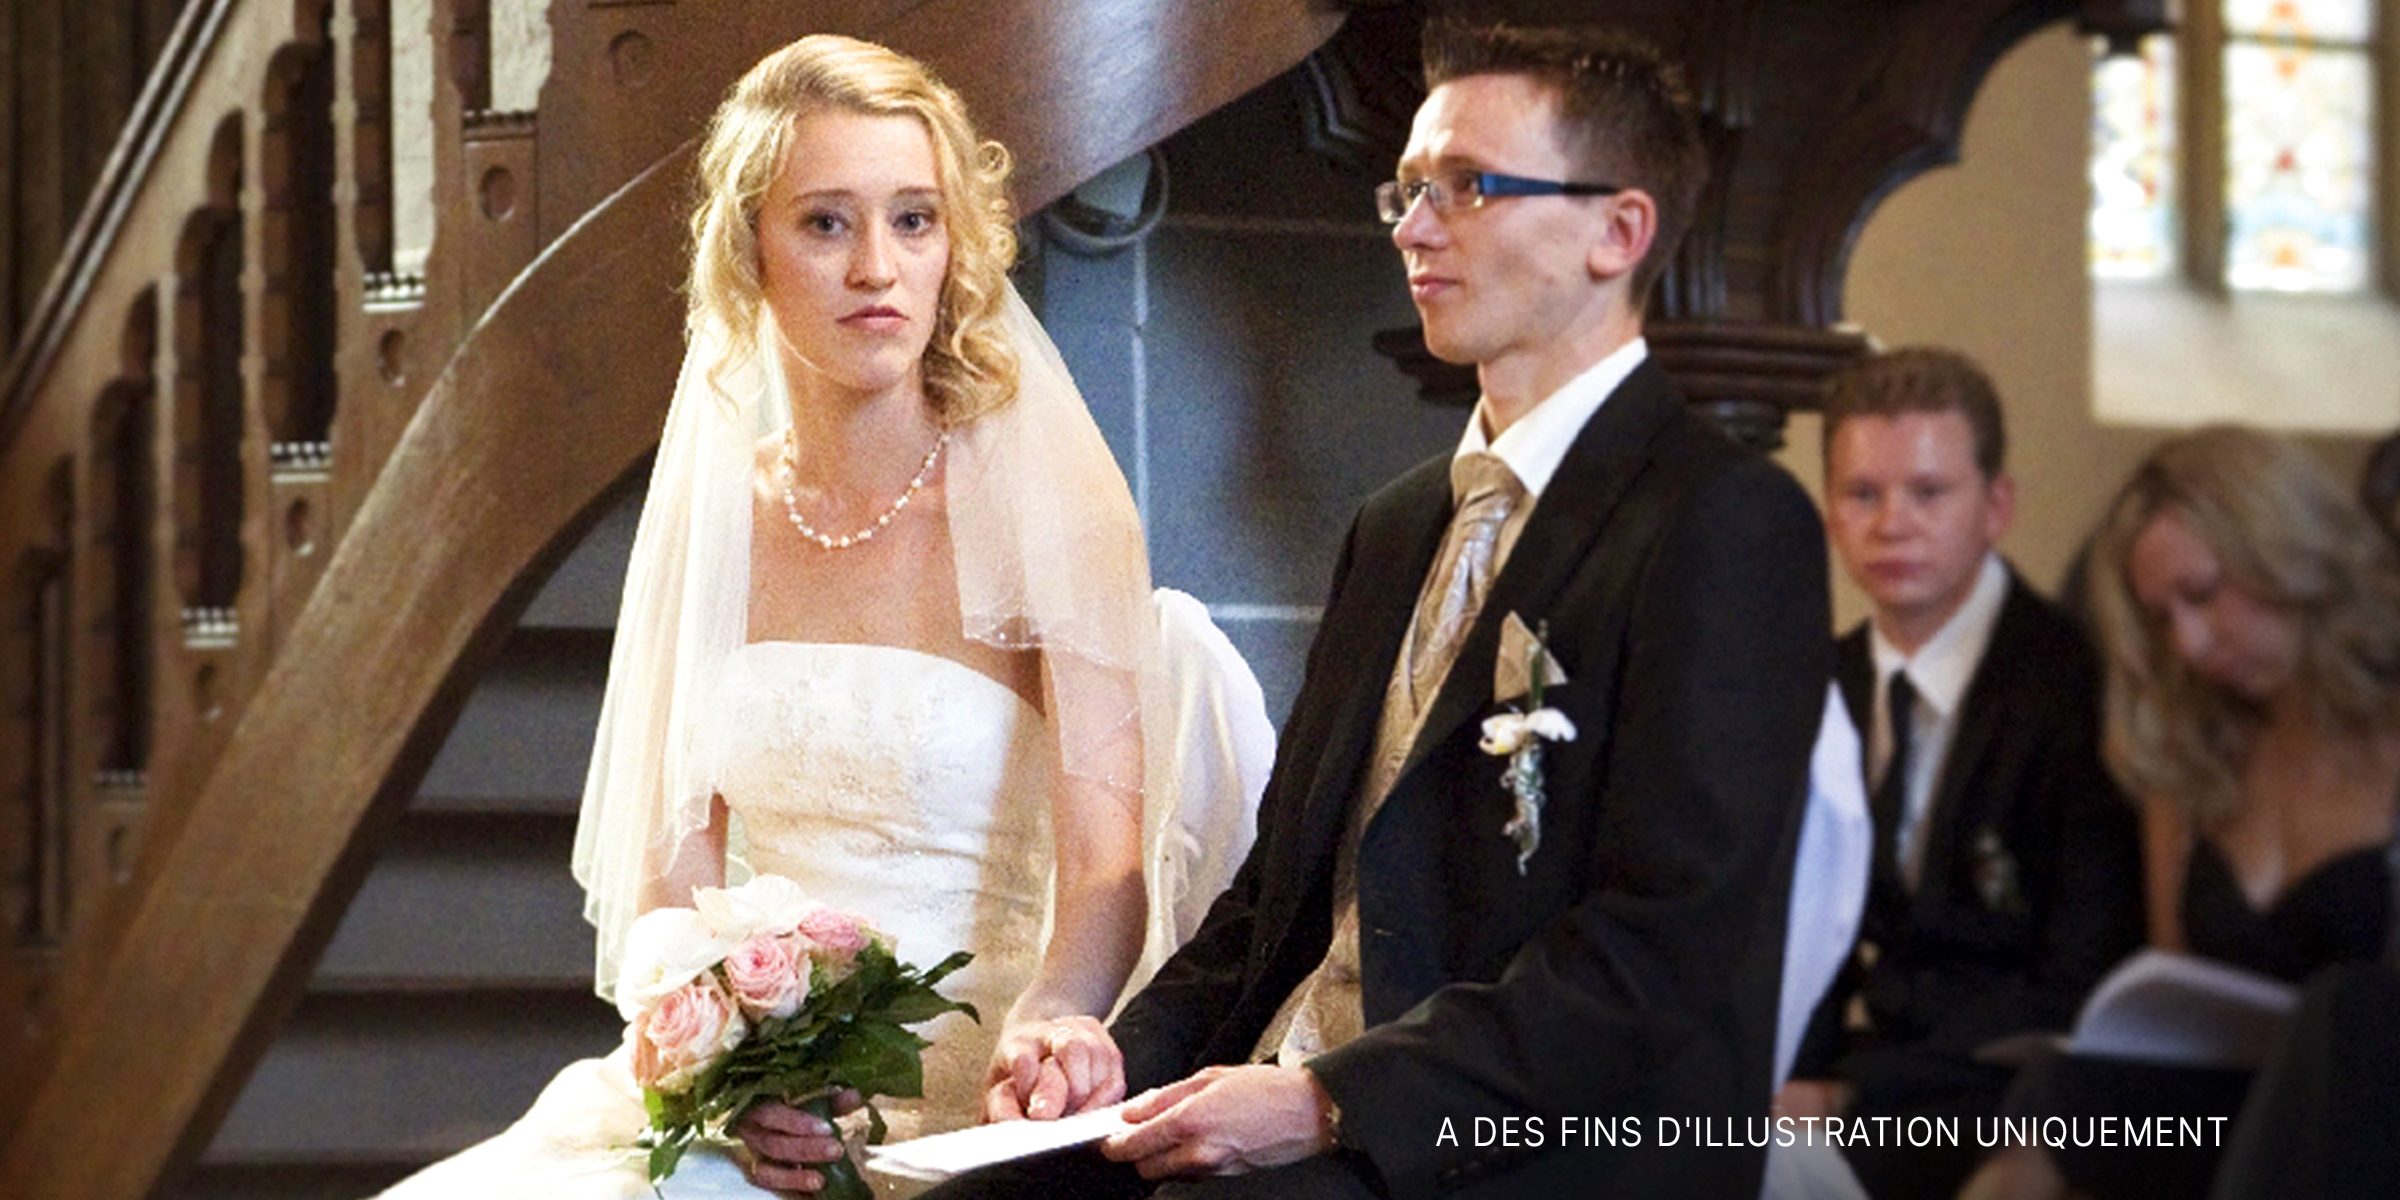 Une mariée et un marié à leur mariage | Source : flickr.com/!Koss/CC BY-ND 2.0